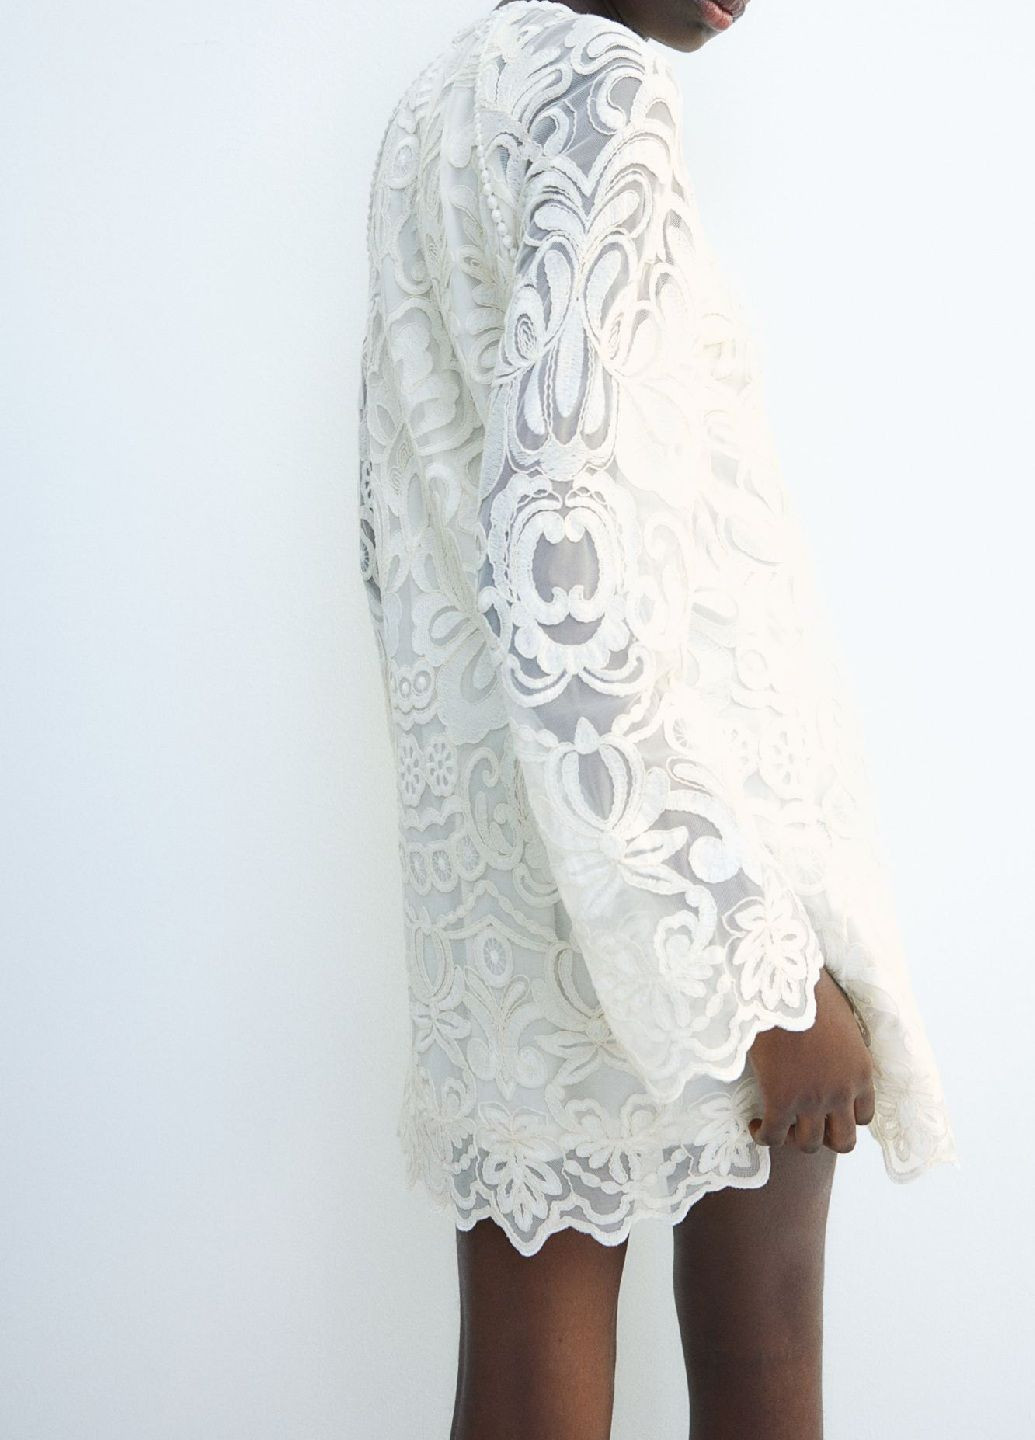 Белое праздничный платье H&M однотонное